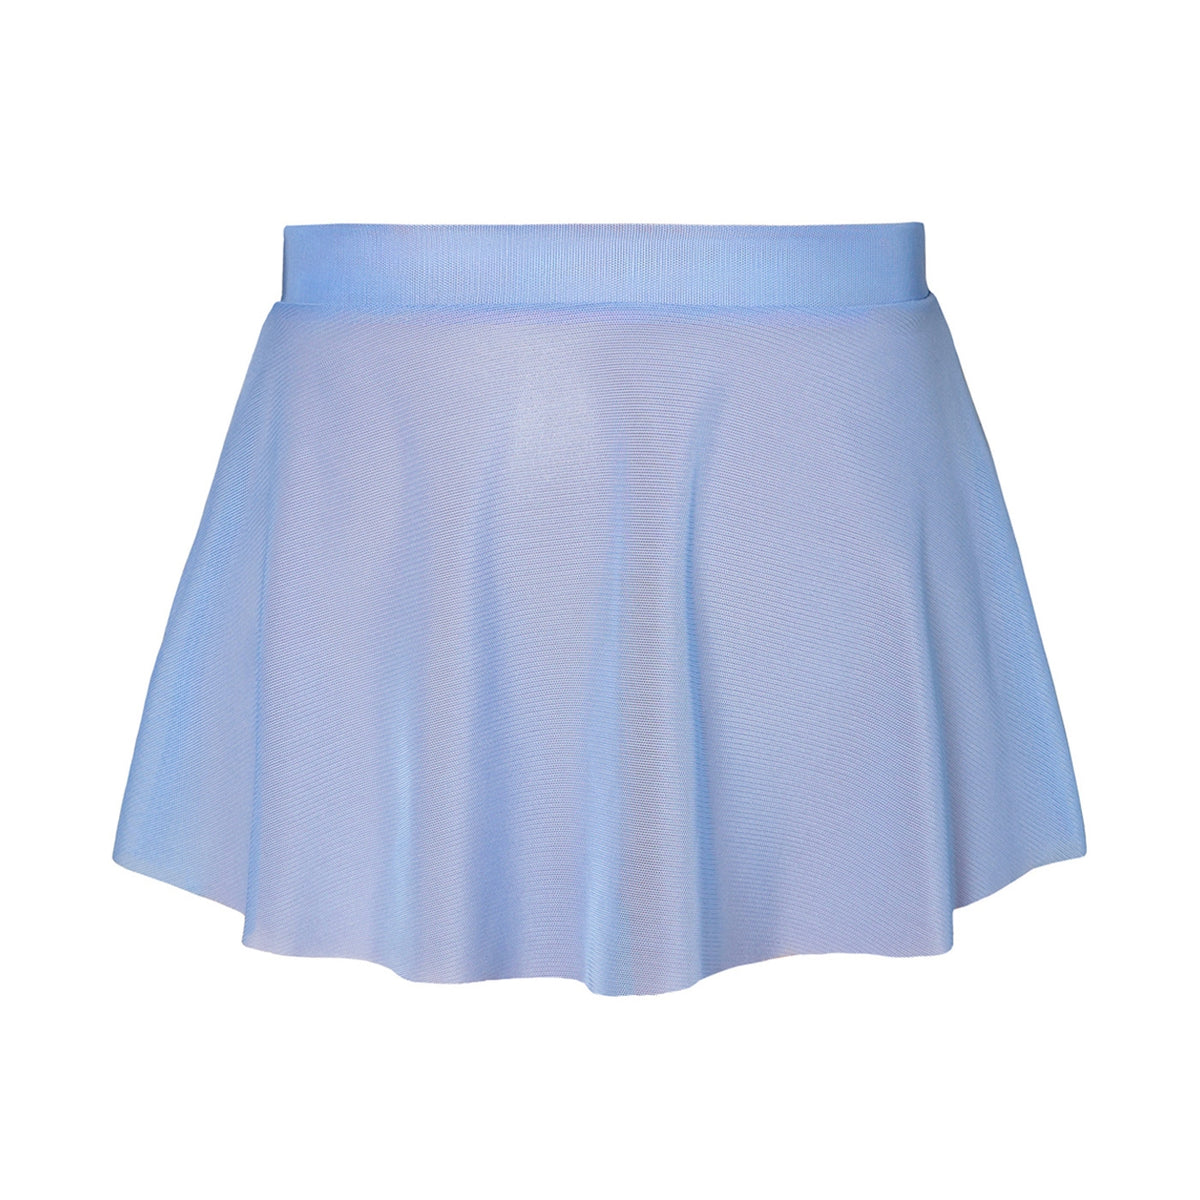 Energetiks Dancewear Natalia Mesh Skirt - Blue Illusion